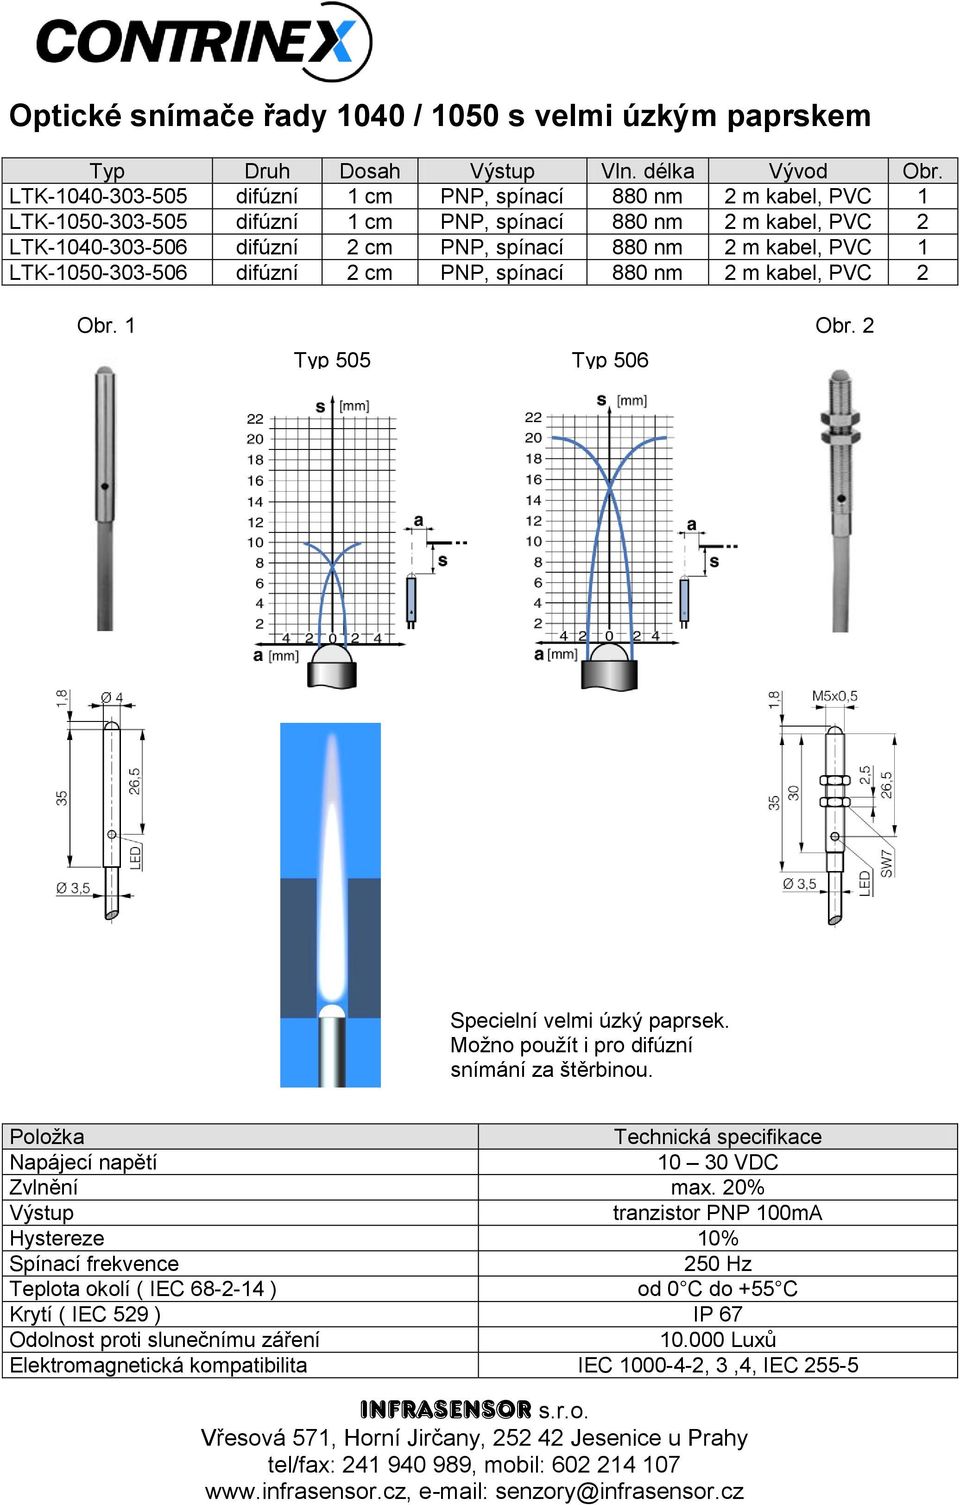 PVC 2 LTK-1040-303-506 difúzní 2 cm PNP, spínací 880 nm 2 m kabel, PVC 1 LTK-1050-303-506 difúzní 2 cm PNP, spínací 880 nm 2 m